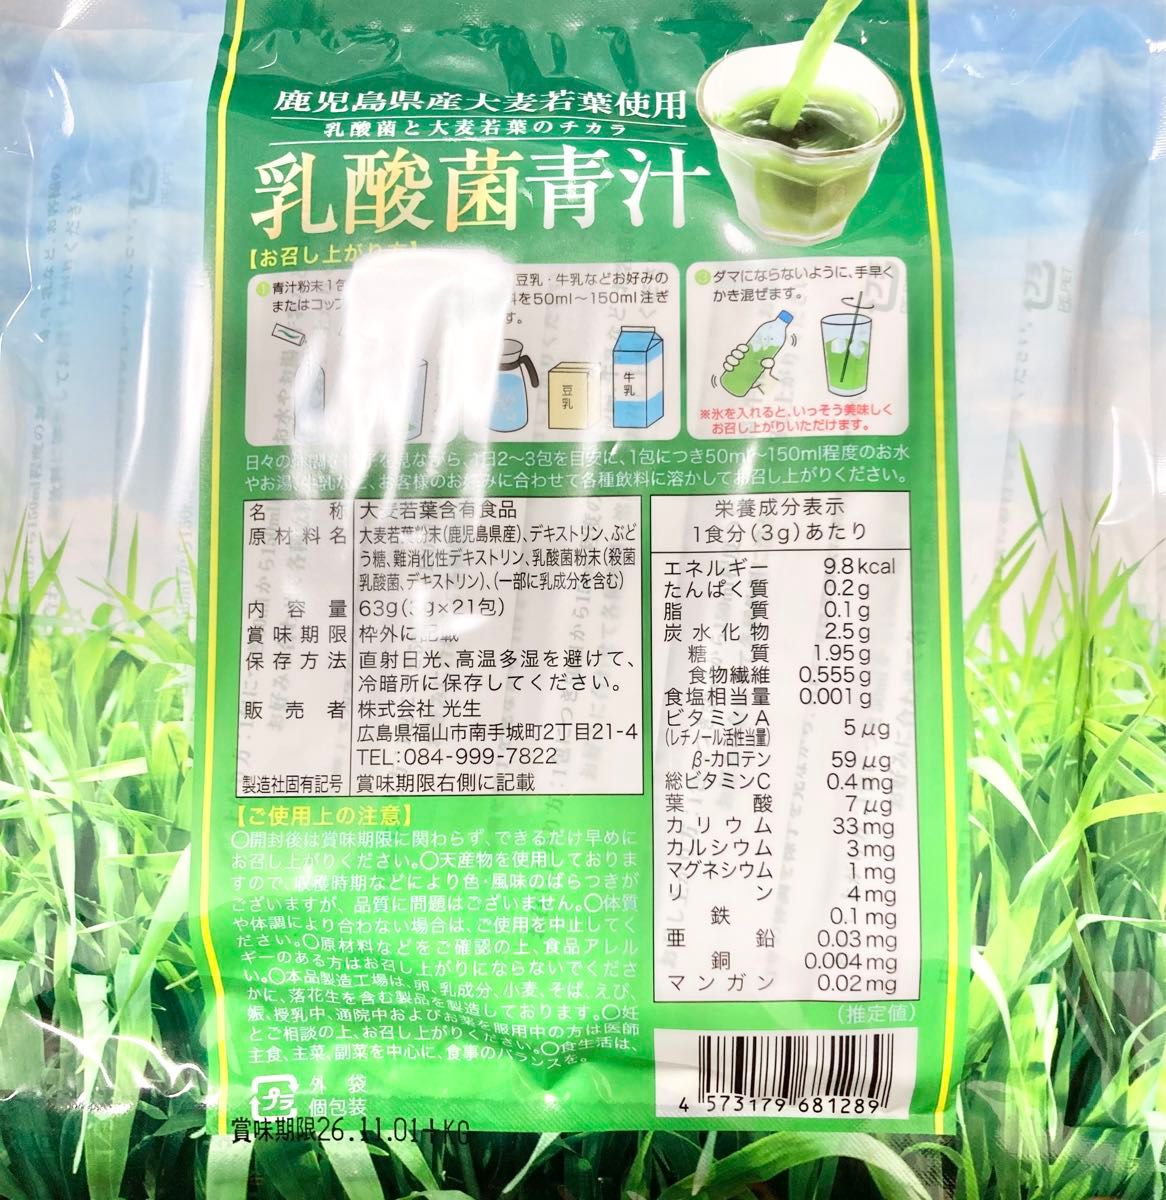 光生 鹿児島県産大麦若葉使用 乳酸菌青汁 63g (3g×21包) 4セット